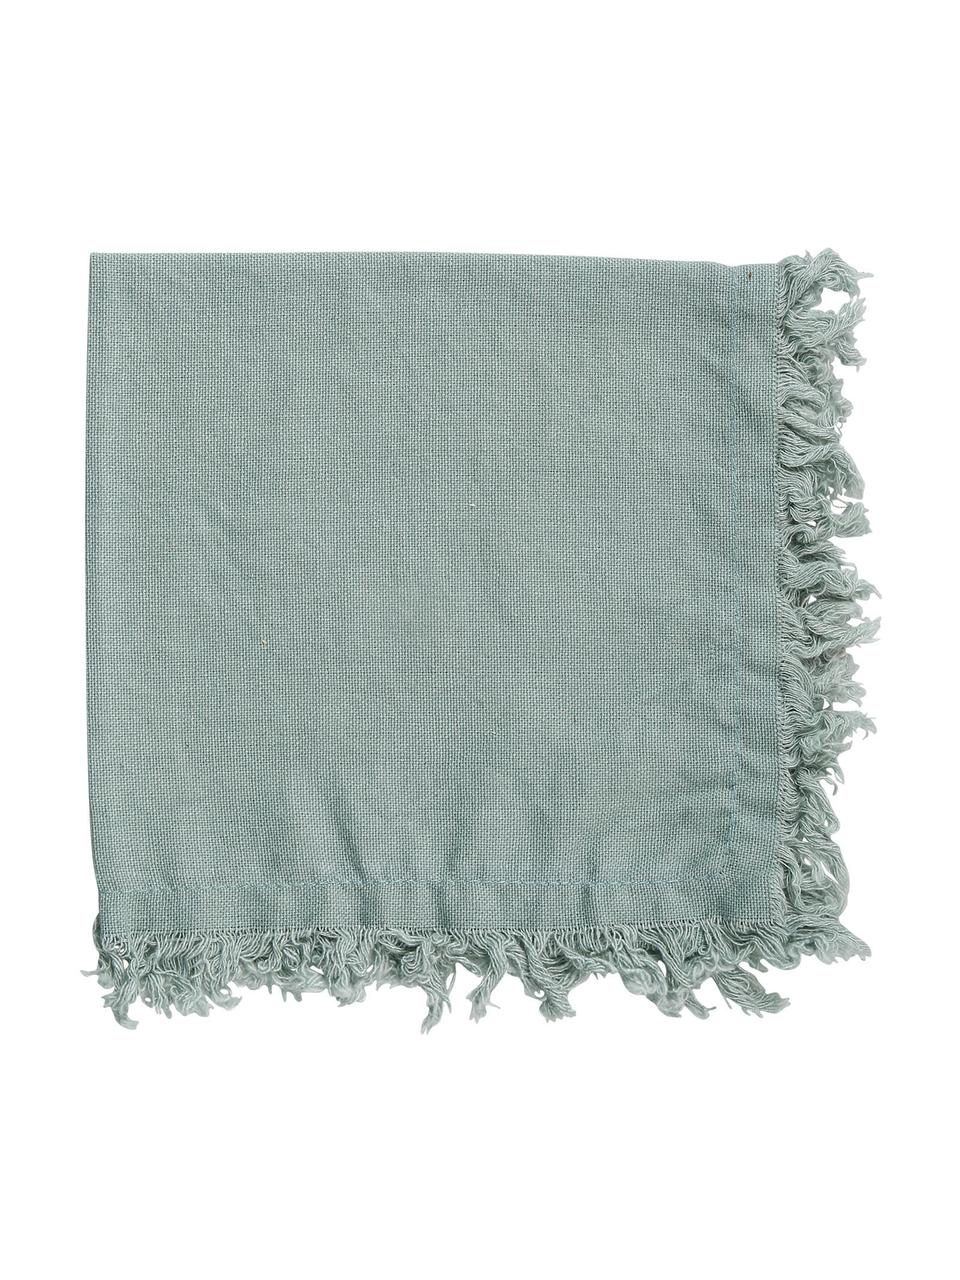 Serviette de table tissu verte sauge Nalia, 2 pièces, 100 % coton, Vert sauge, larg. 35 x long. 35 cm